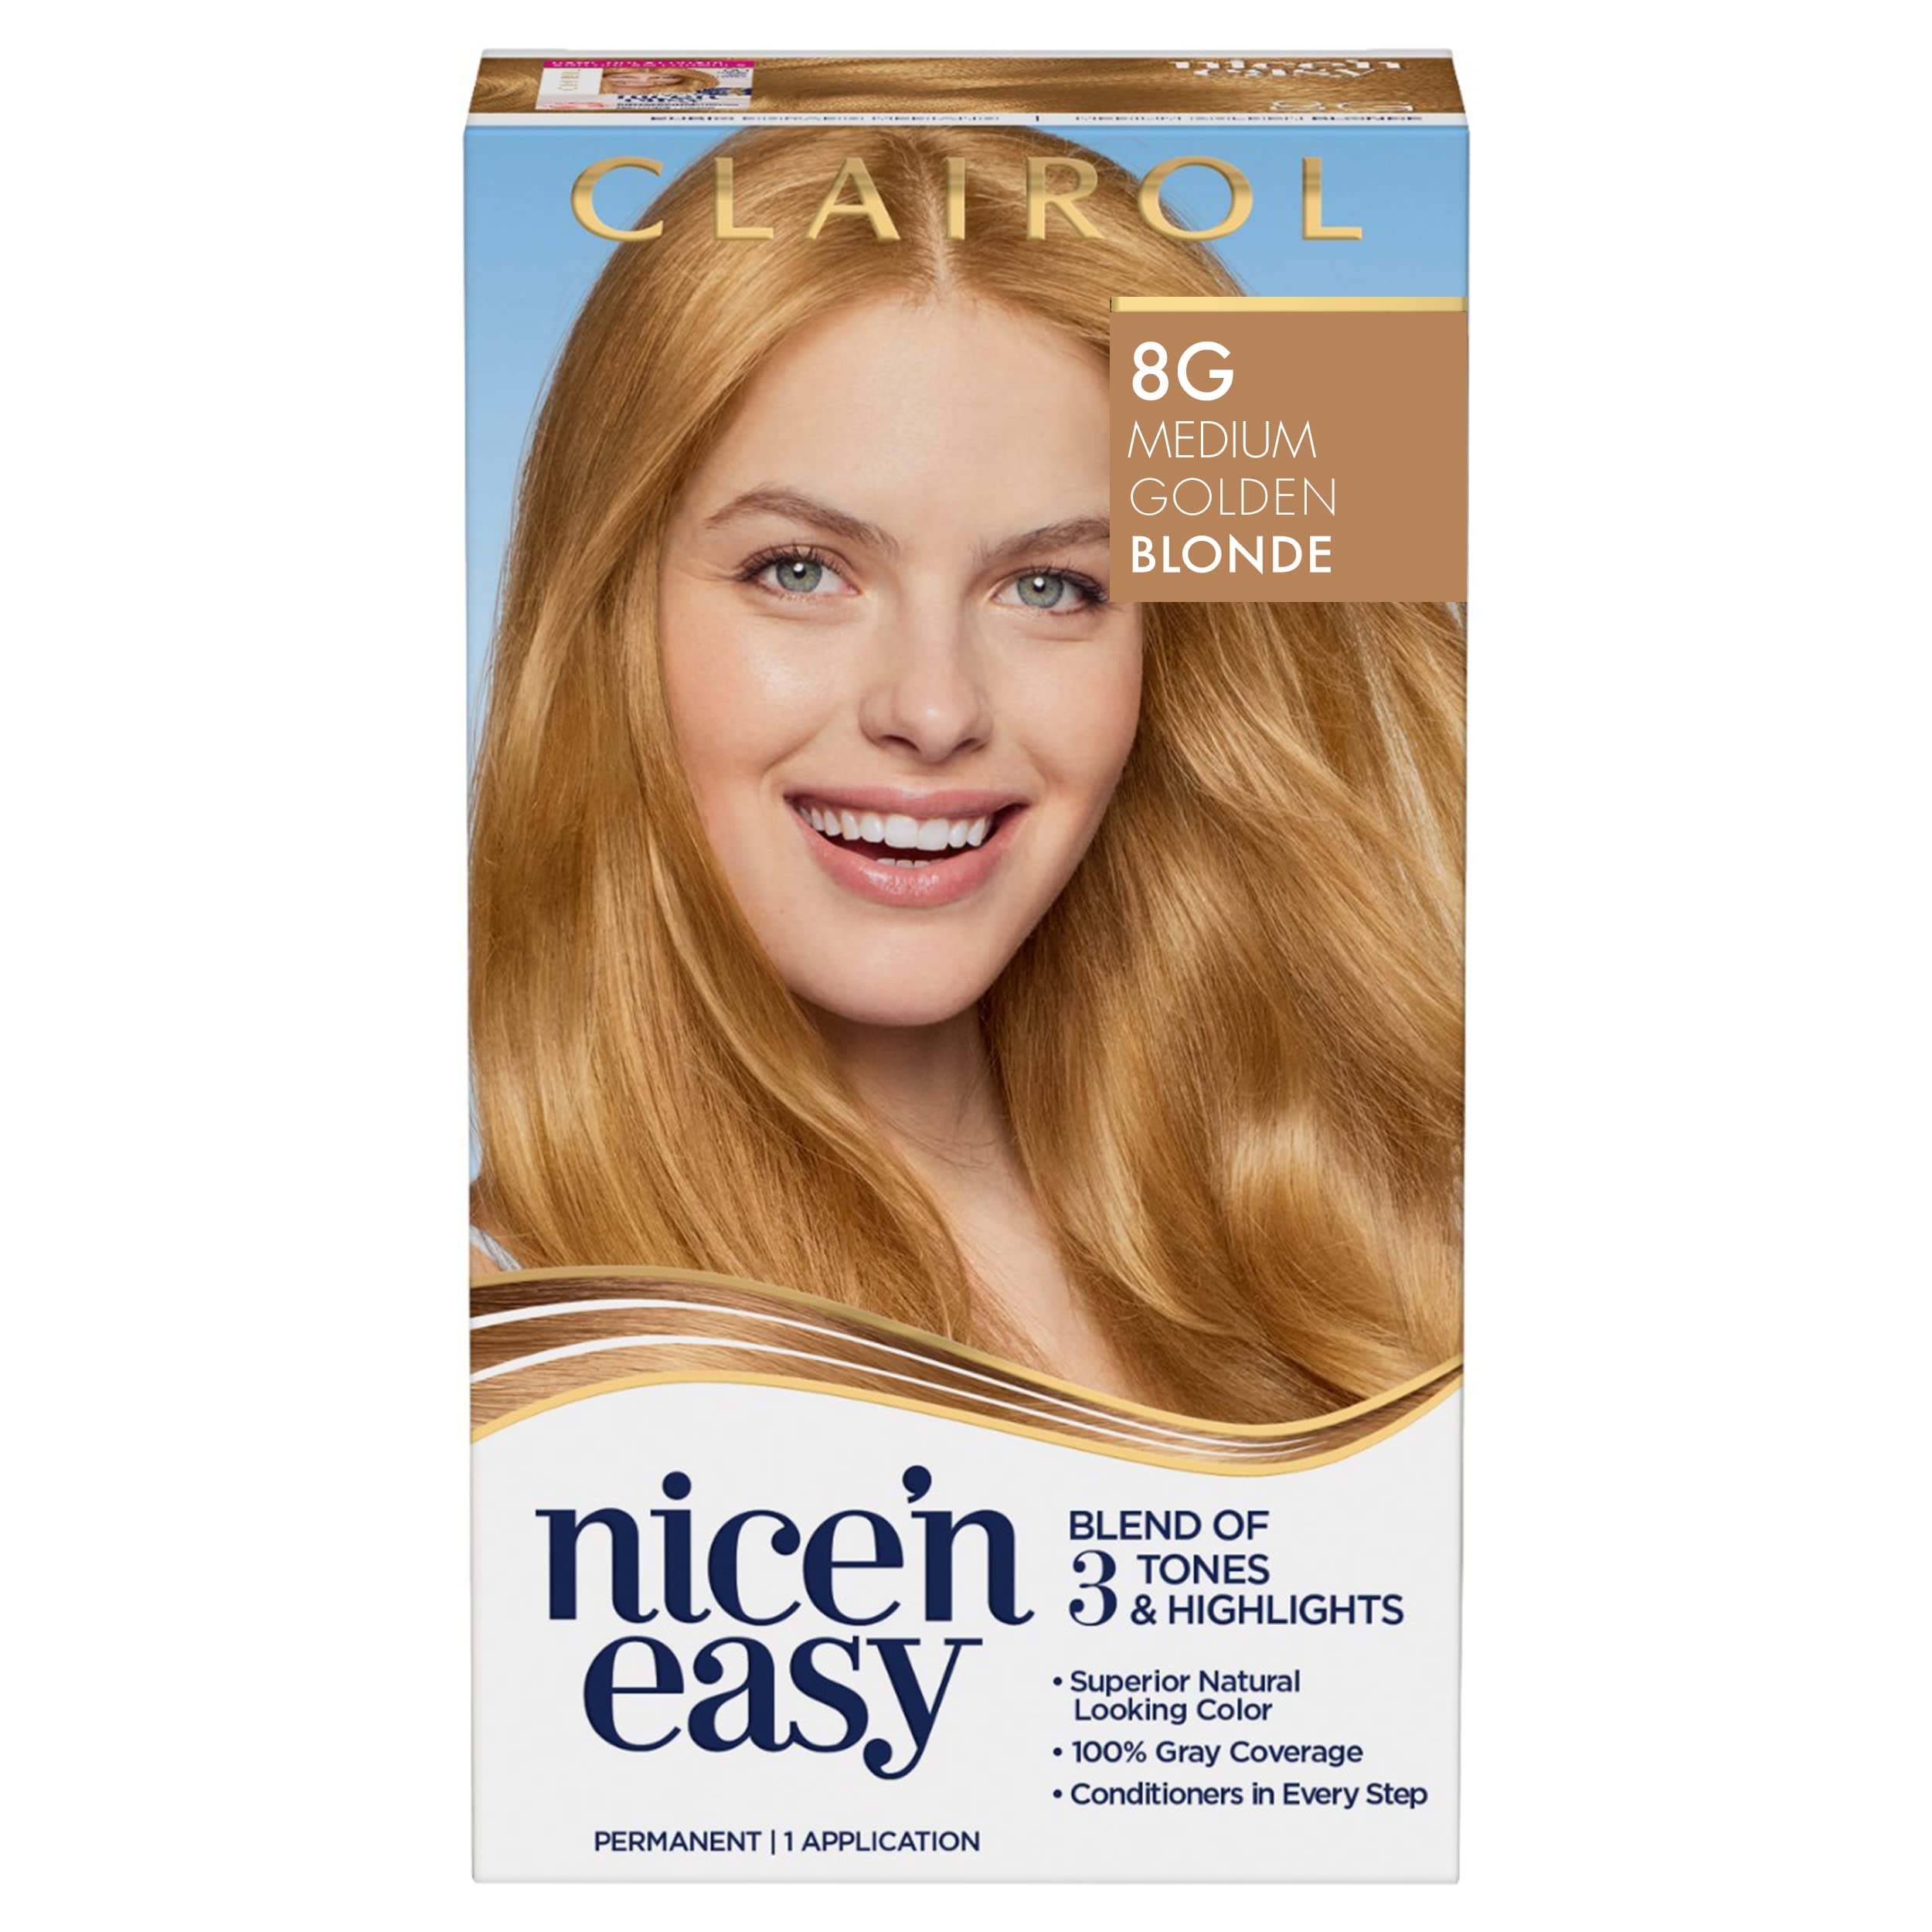 Clairol Nice'n Easy Permanent Hair Dye, 8G Medium Golden Blonde Hair Color,  Pack of 1